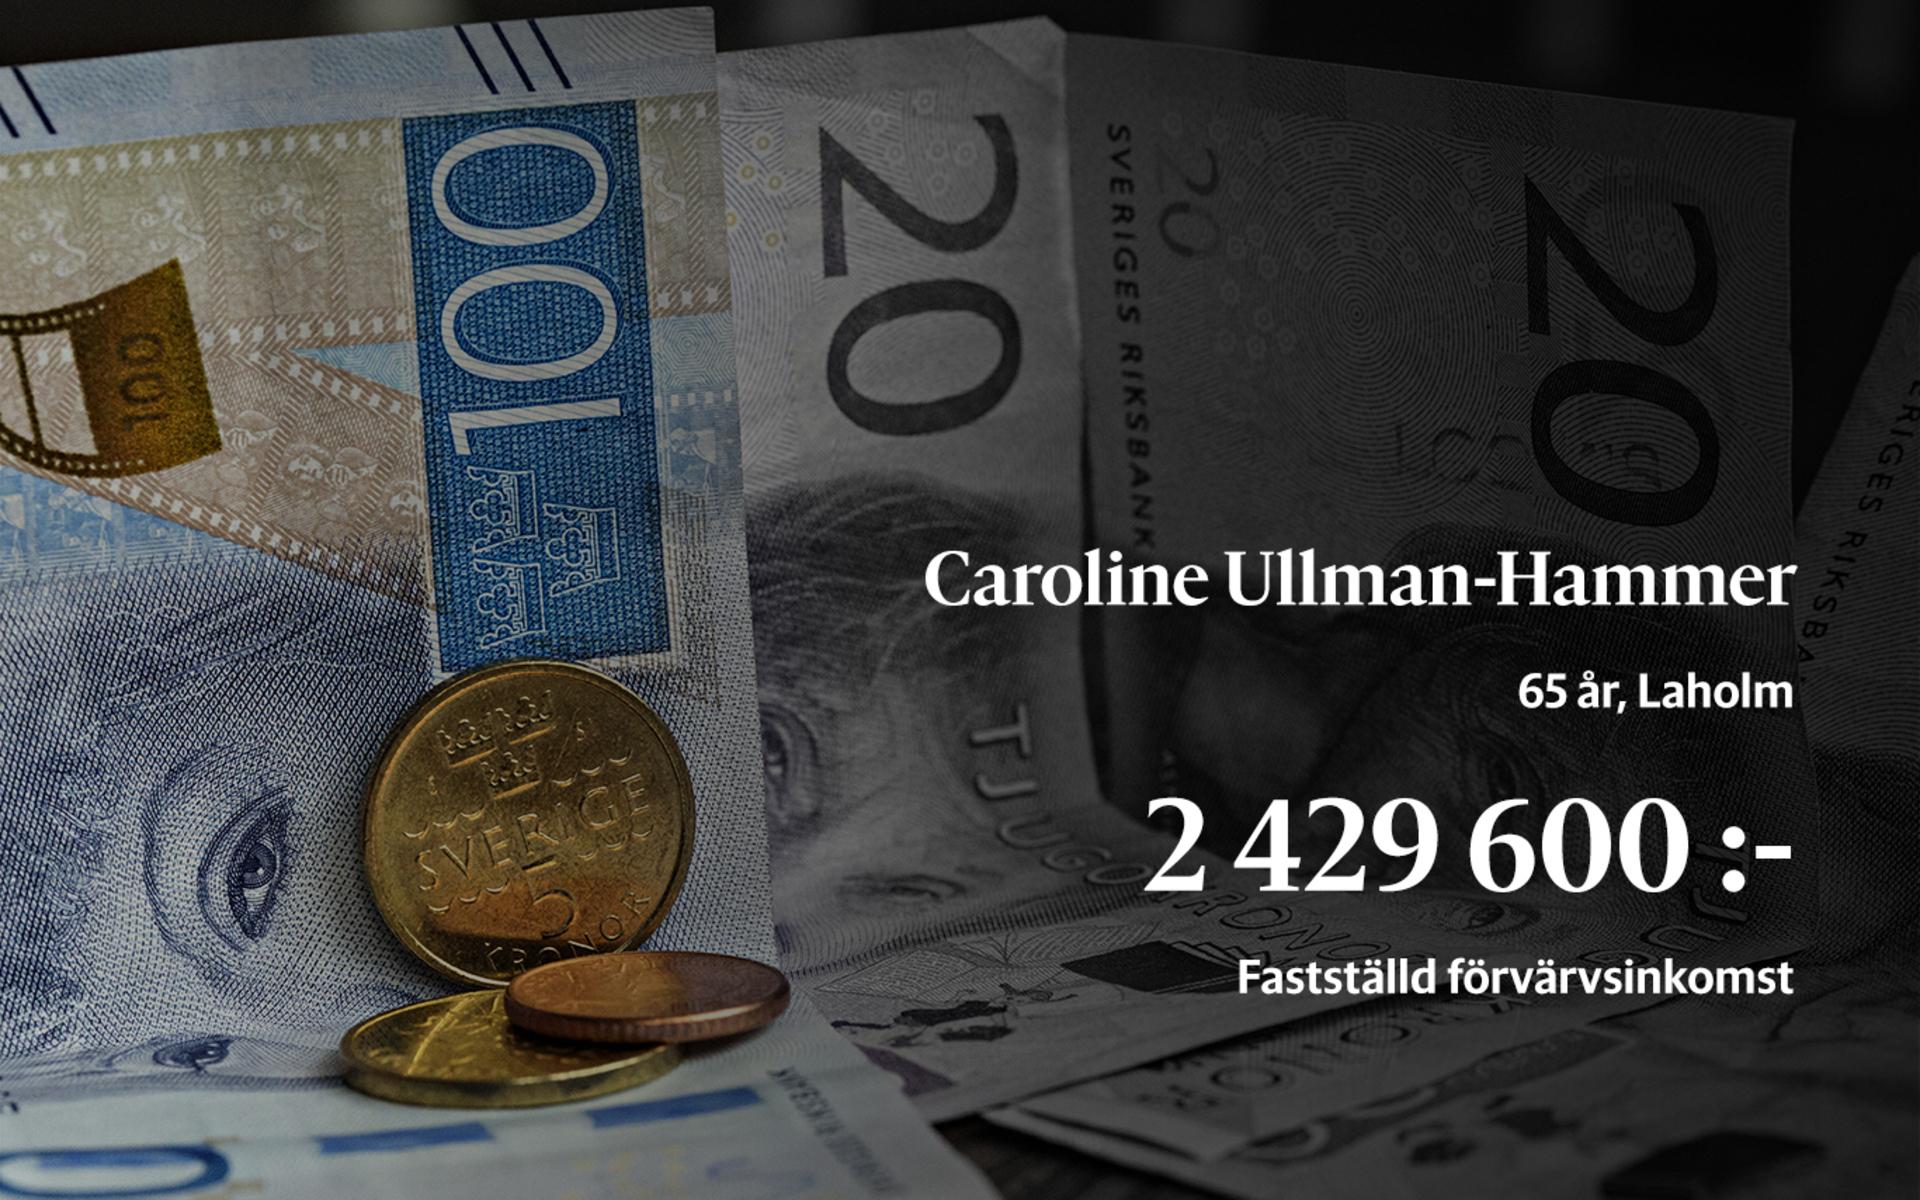 5:a i löneligan. Caroline Ullman-Hammer är vd på Øresundsbrokonsortiet. 